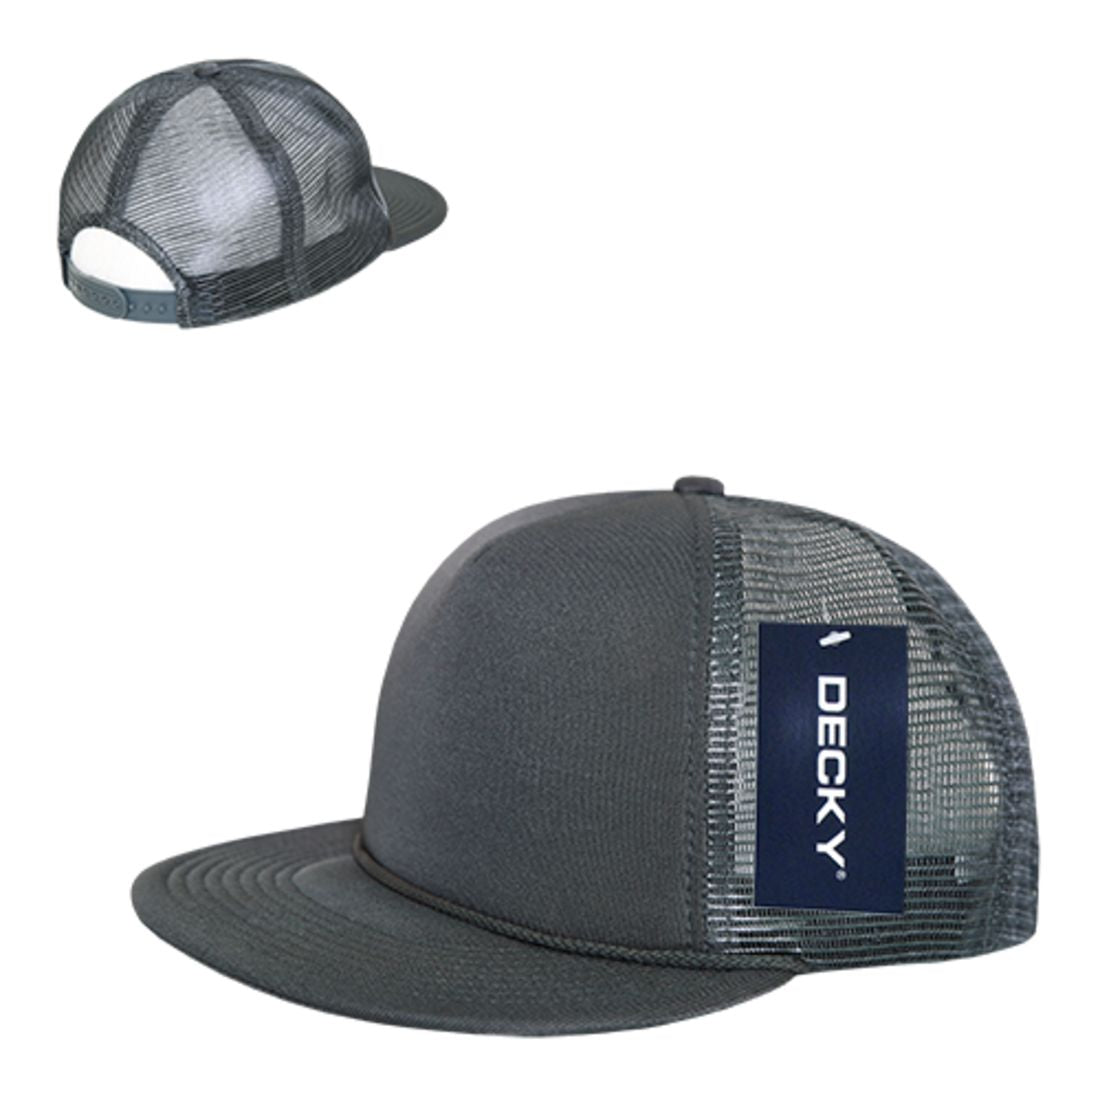 Decky 223 Solid Foam Trucker Hats High Profile 5 Panel Flat Bill Caps Blank Wholesale